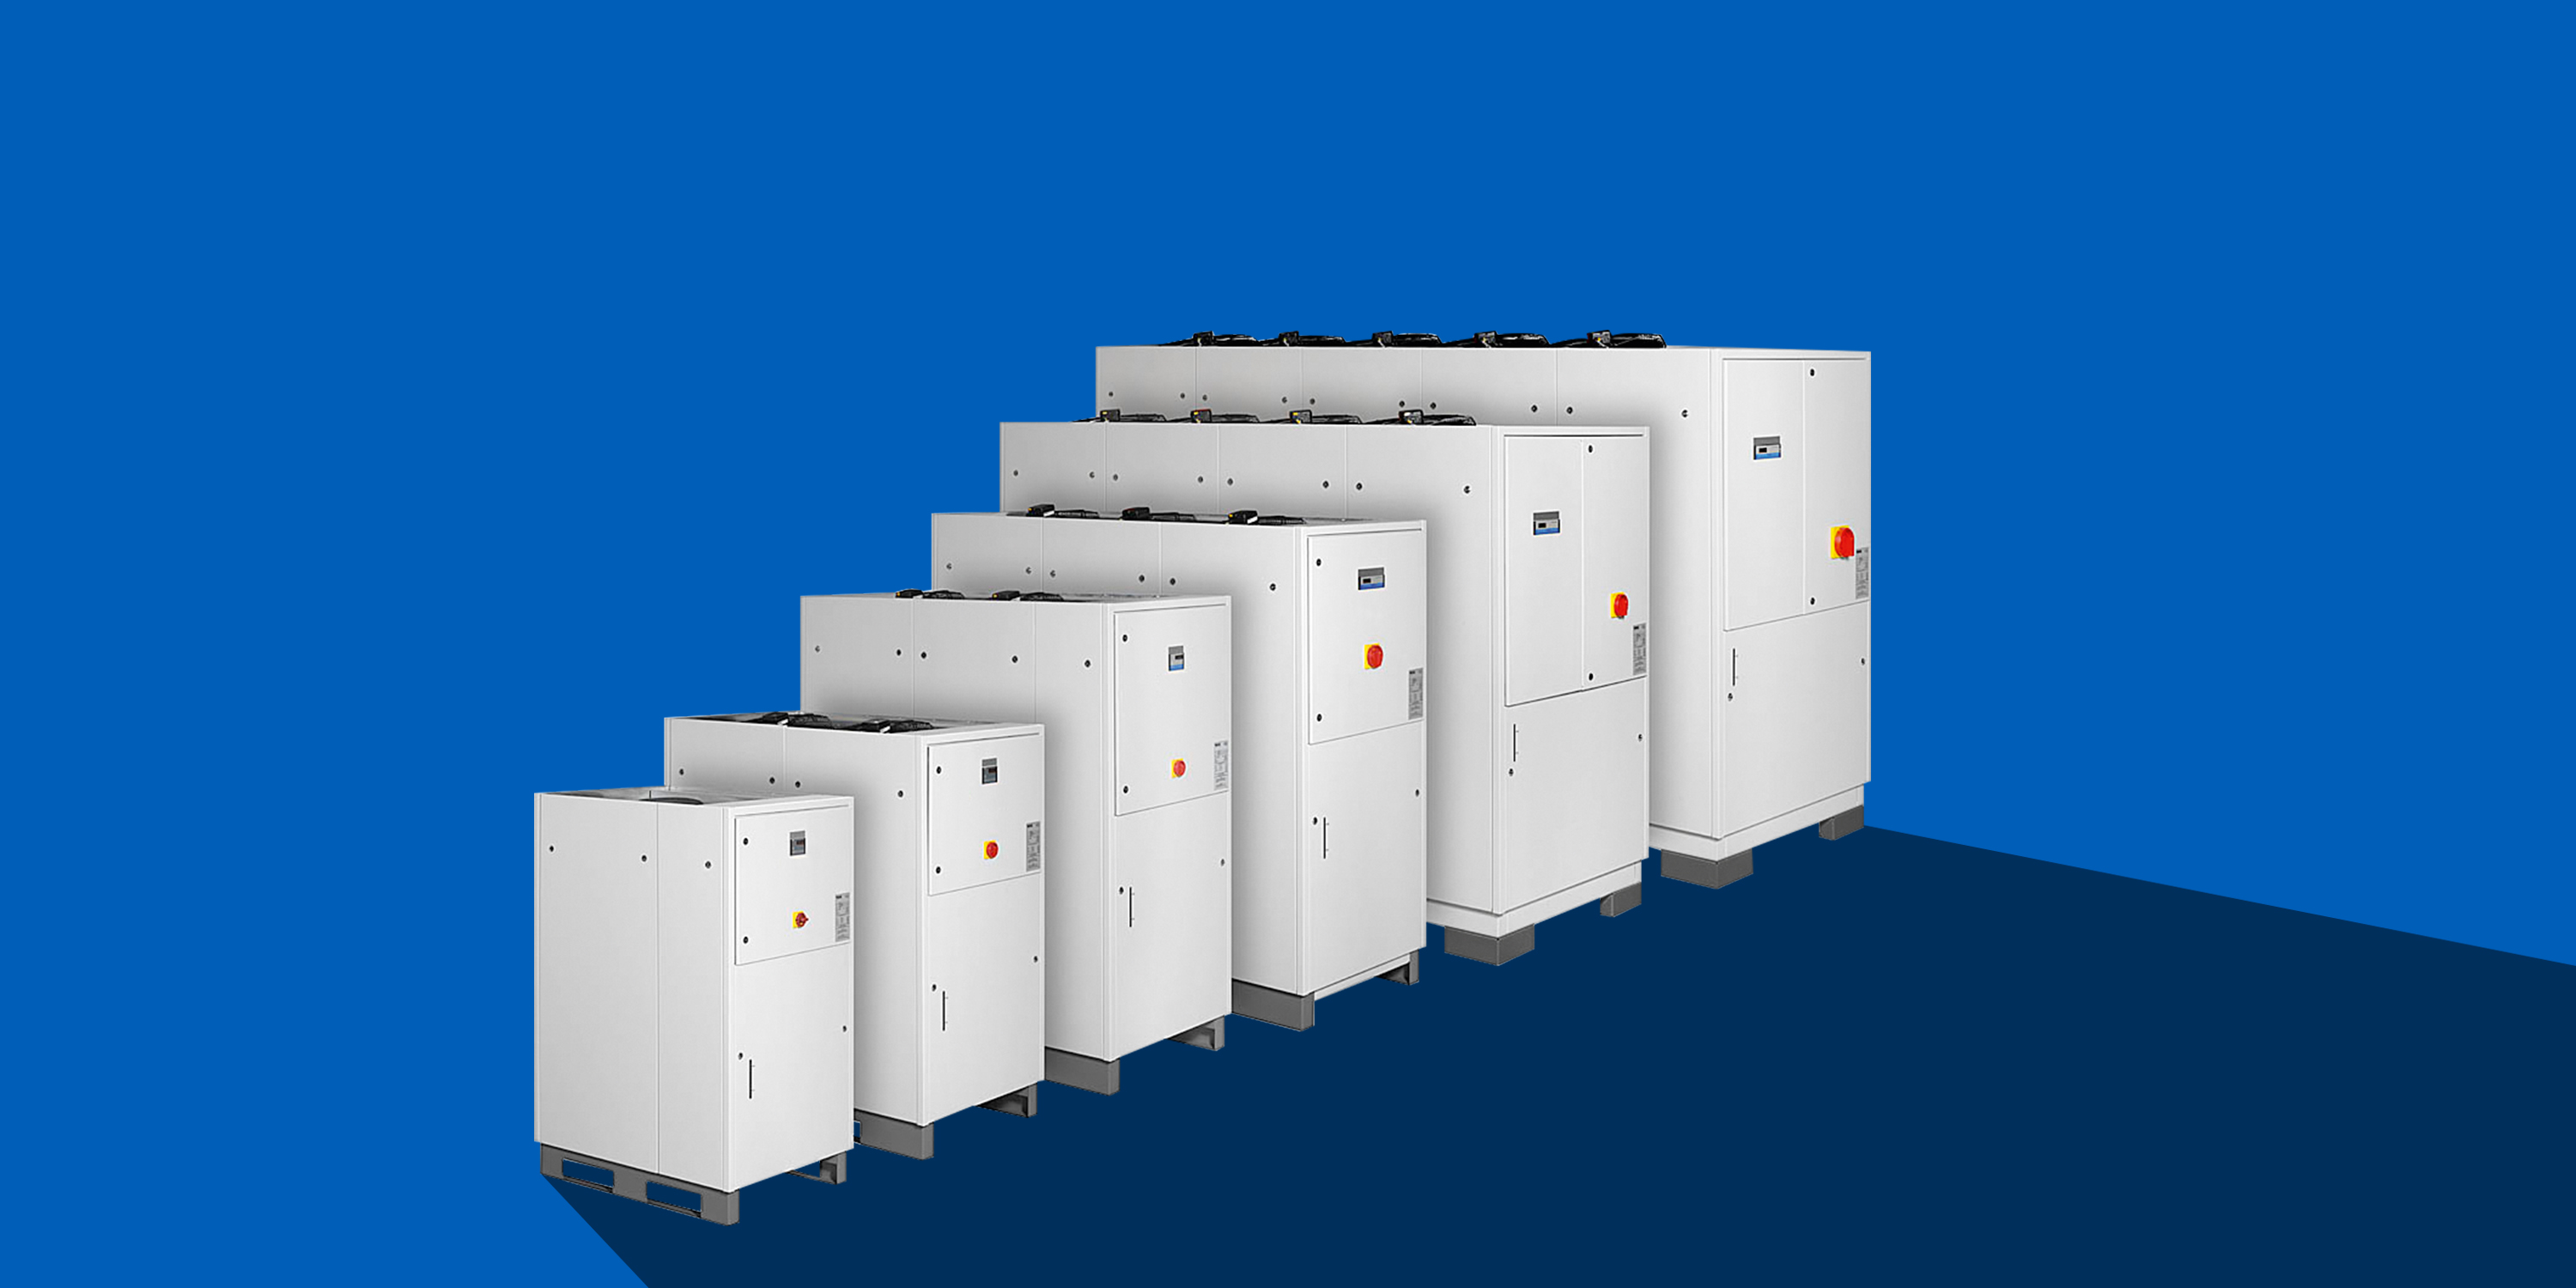 Plattformbasierende Standard-Modelle für die präzise, zuverlässige Kühlung. Alle Kühlblocksysteme sind kompakte, werksseitig montierte Flüssigkeitskühlsätze, die für die unterschiedlichsten industriellen Anwendungen geeignet sind. Durch den Einsatz verschiedenster Kältemittel kann der Kühler bedarfsgerecht ausgelegt werden.